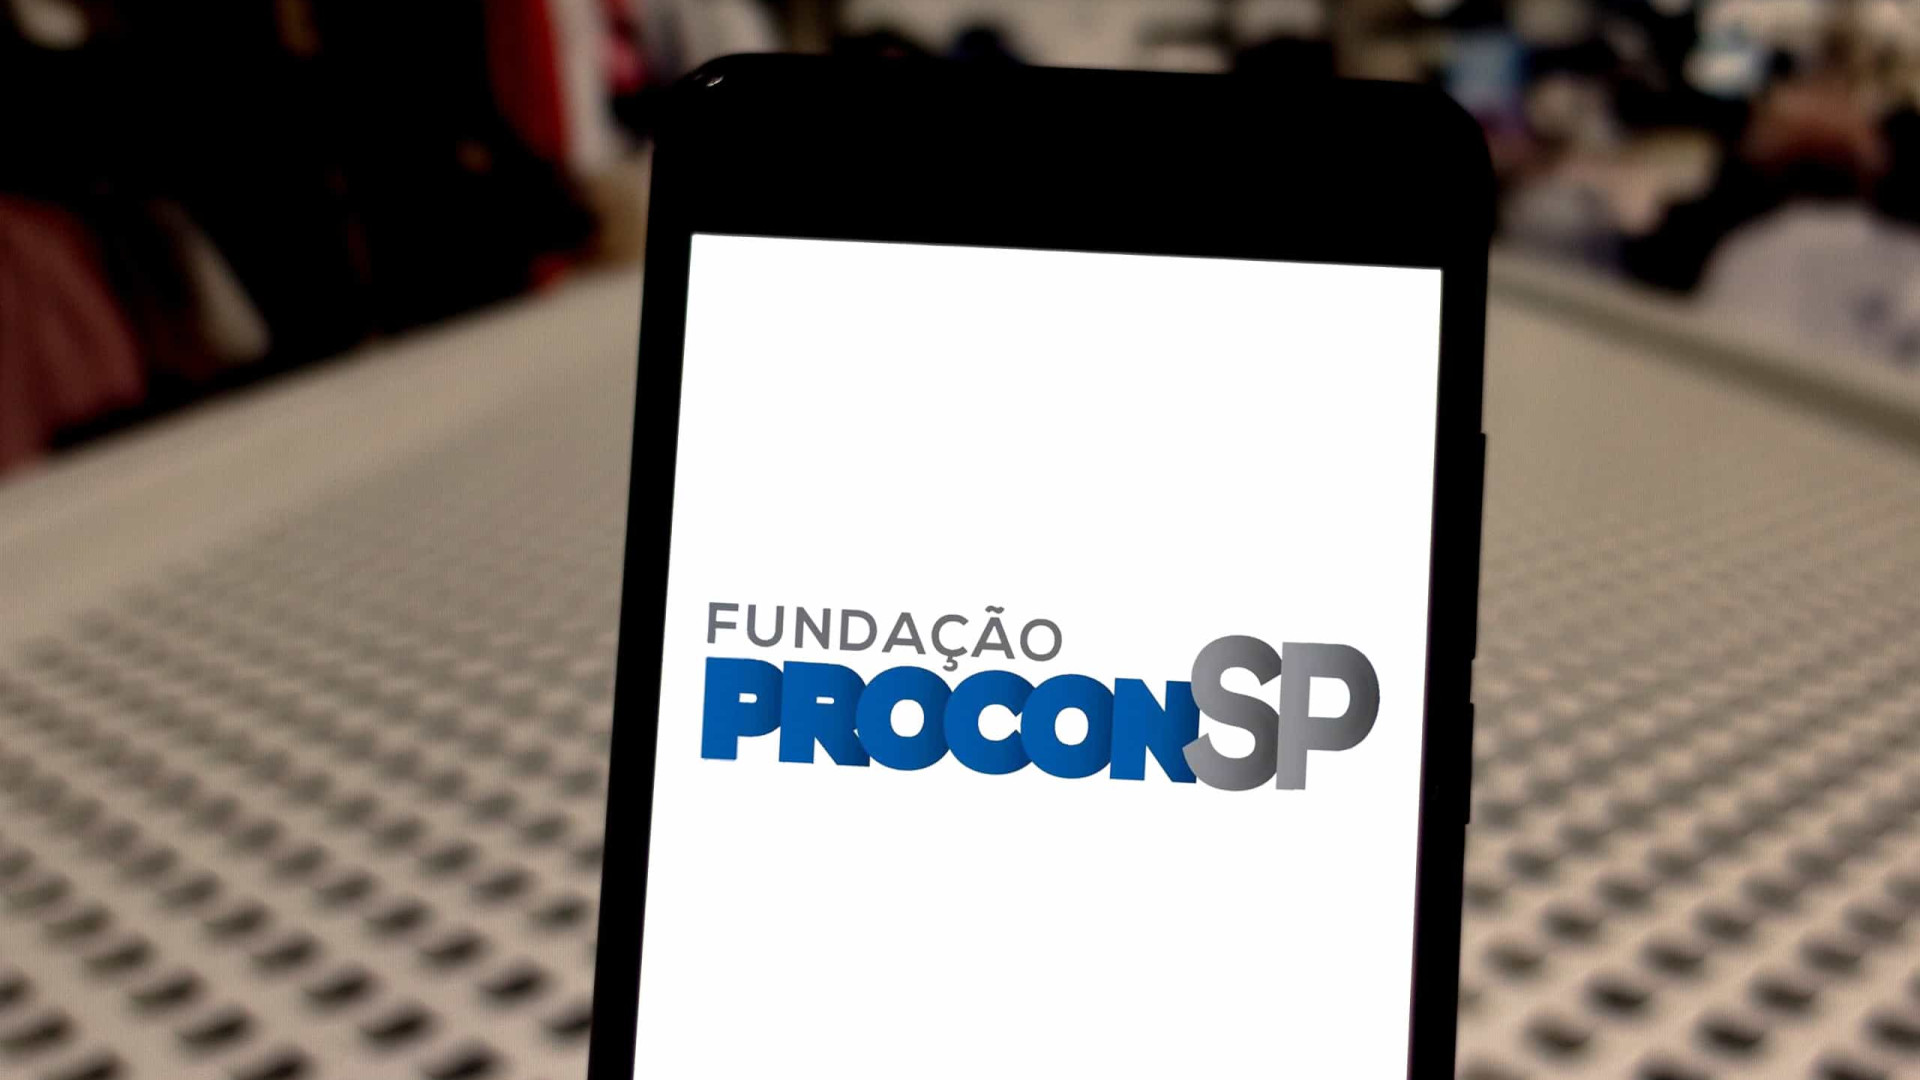 Procon-SP notifica Itaú por falhas em aplicativos e plataformas